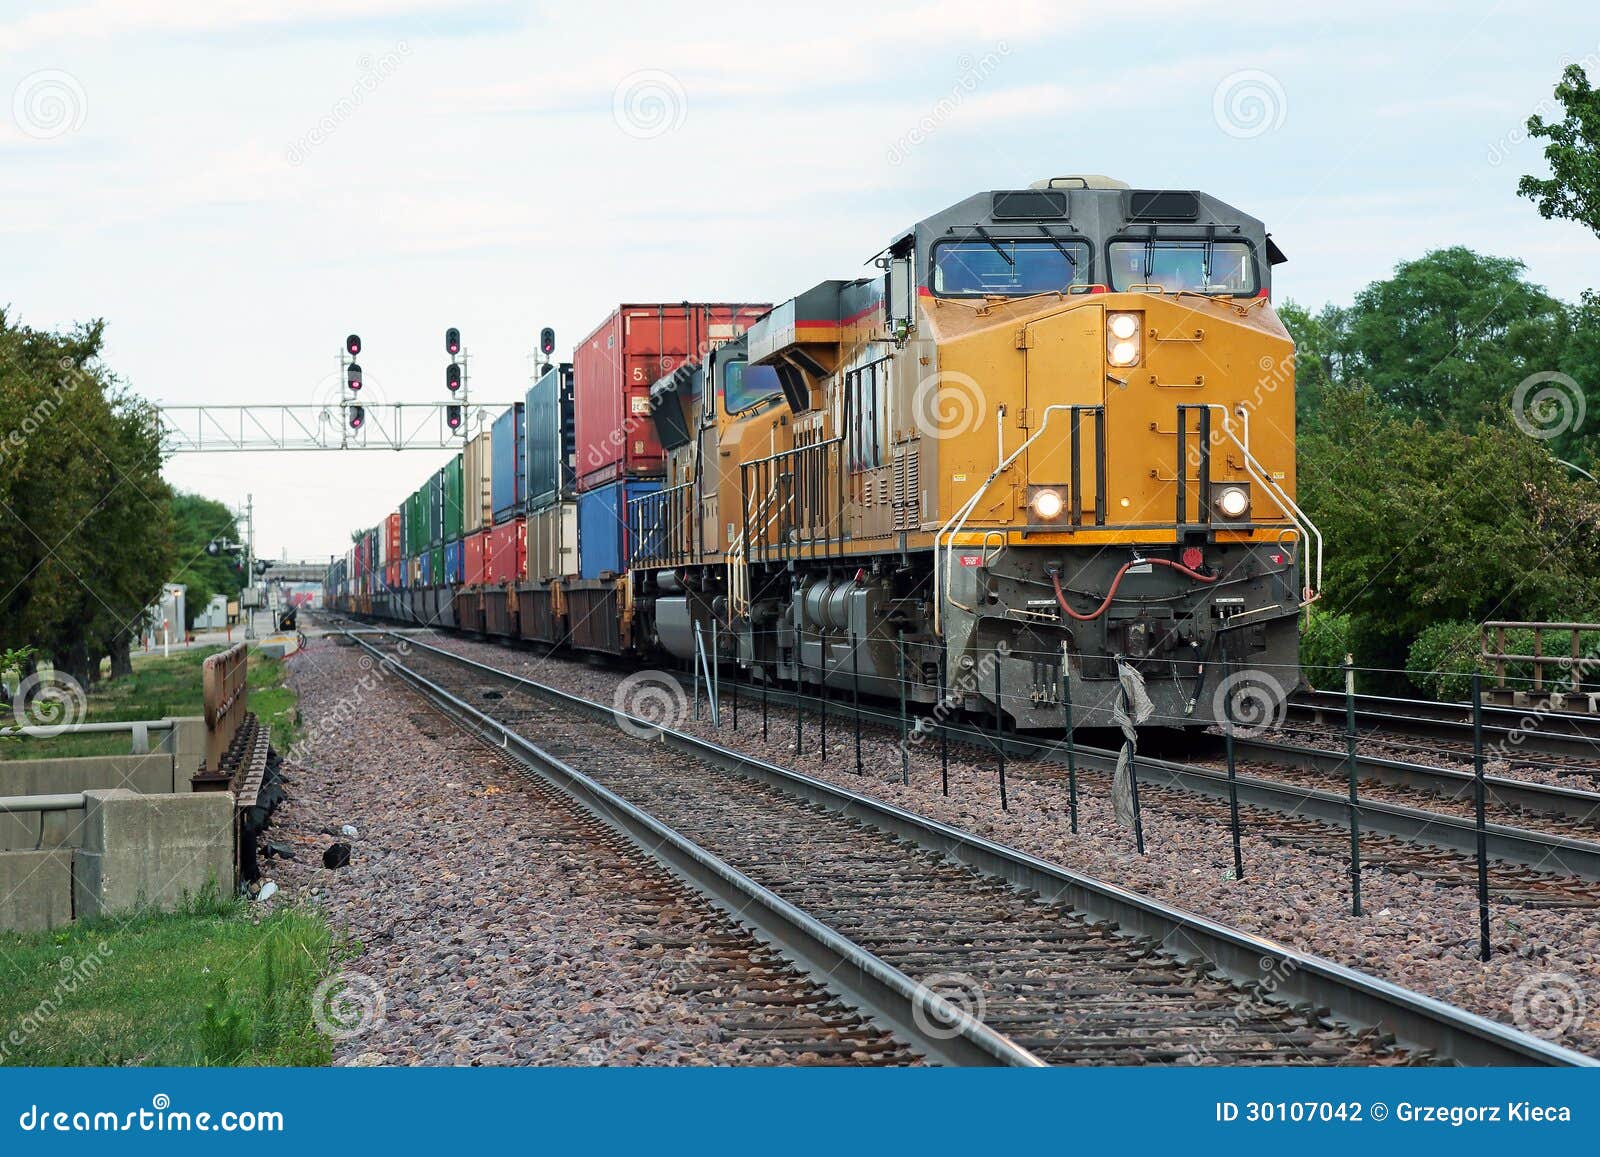 approaching freight train